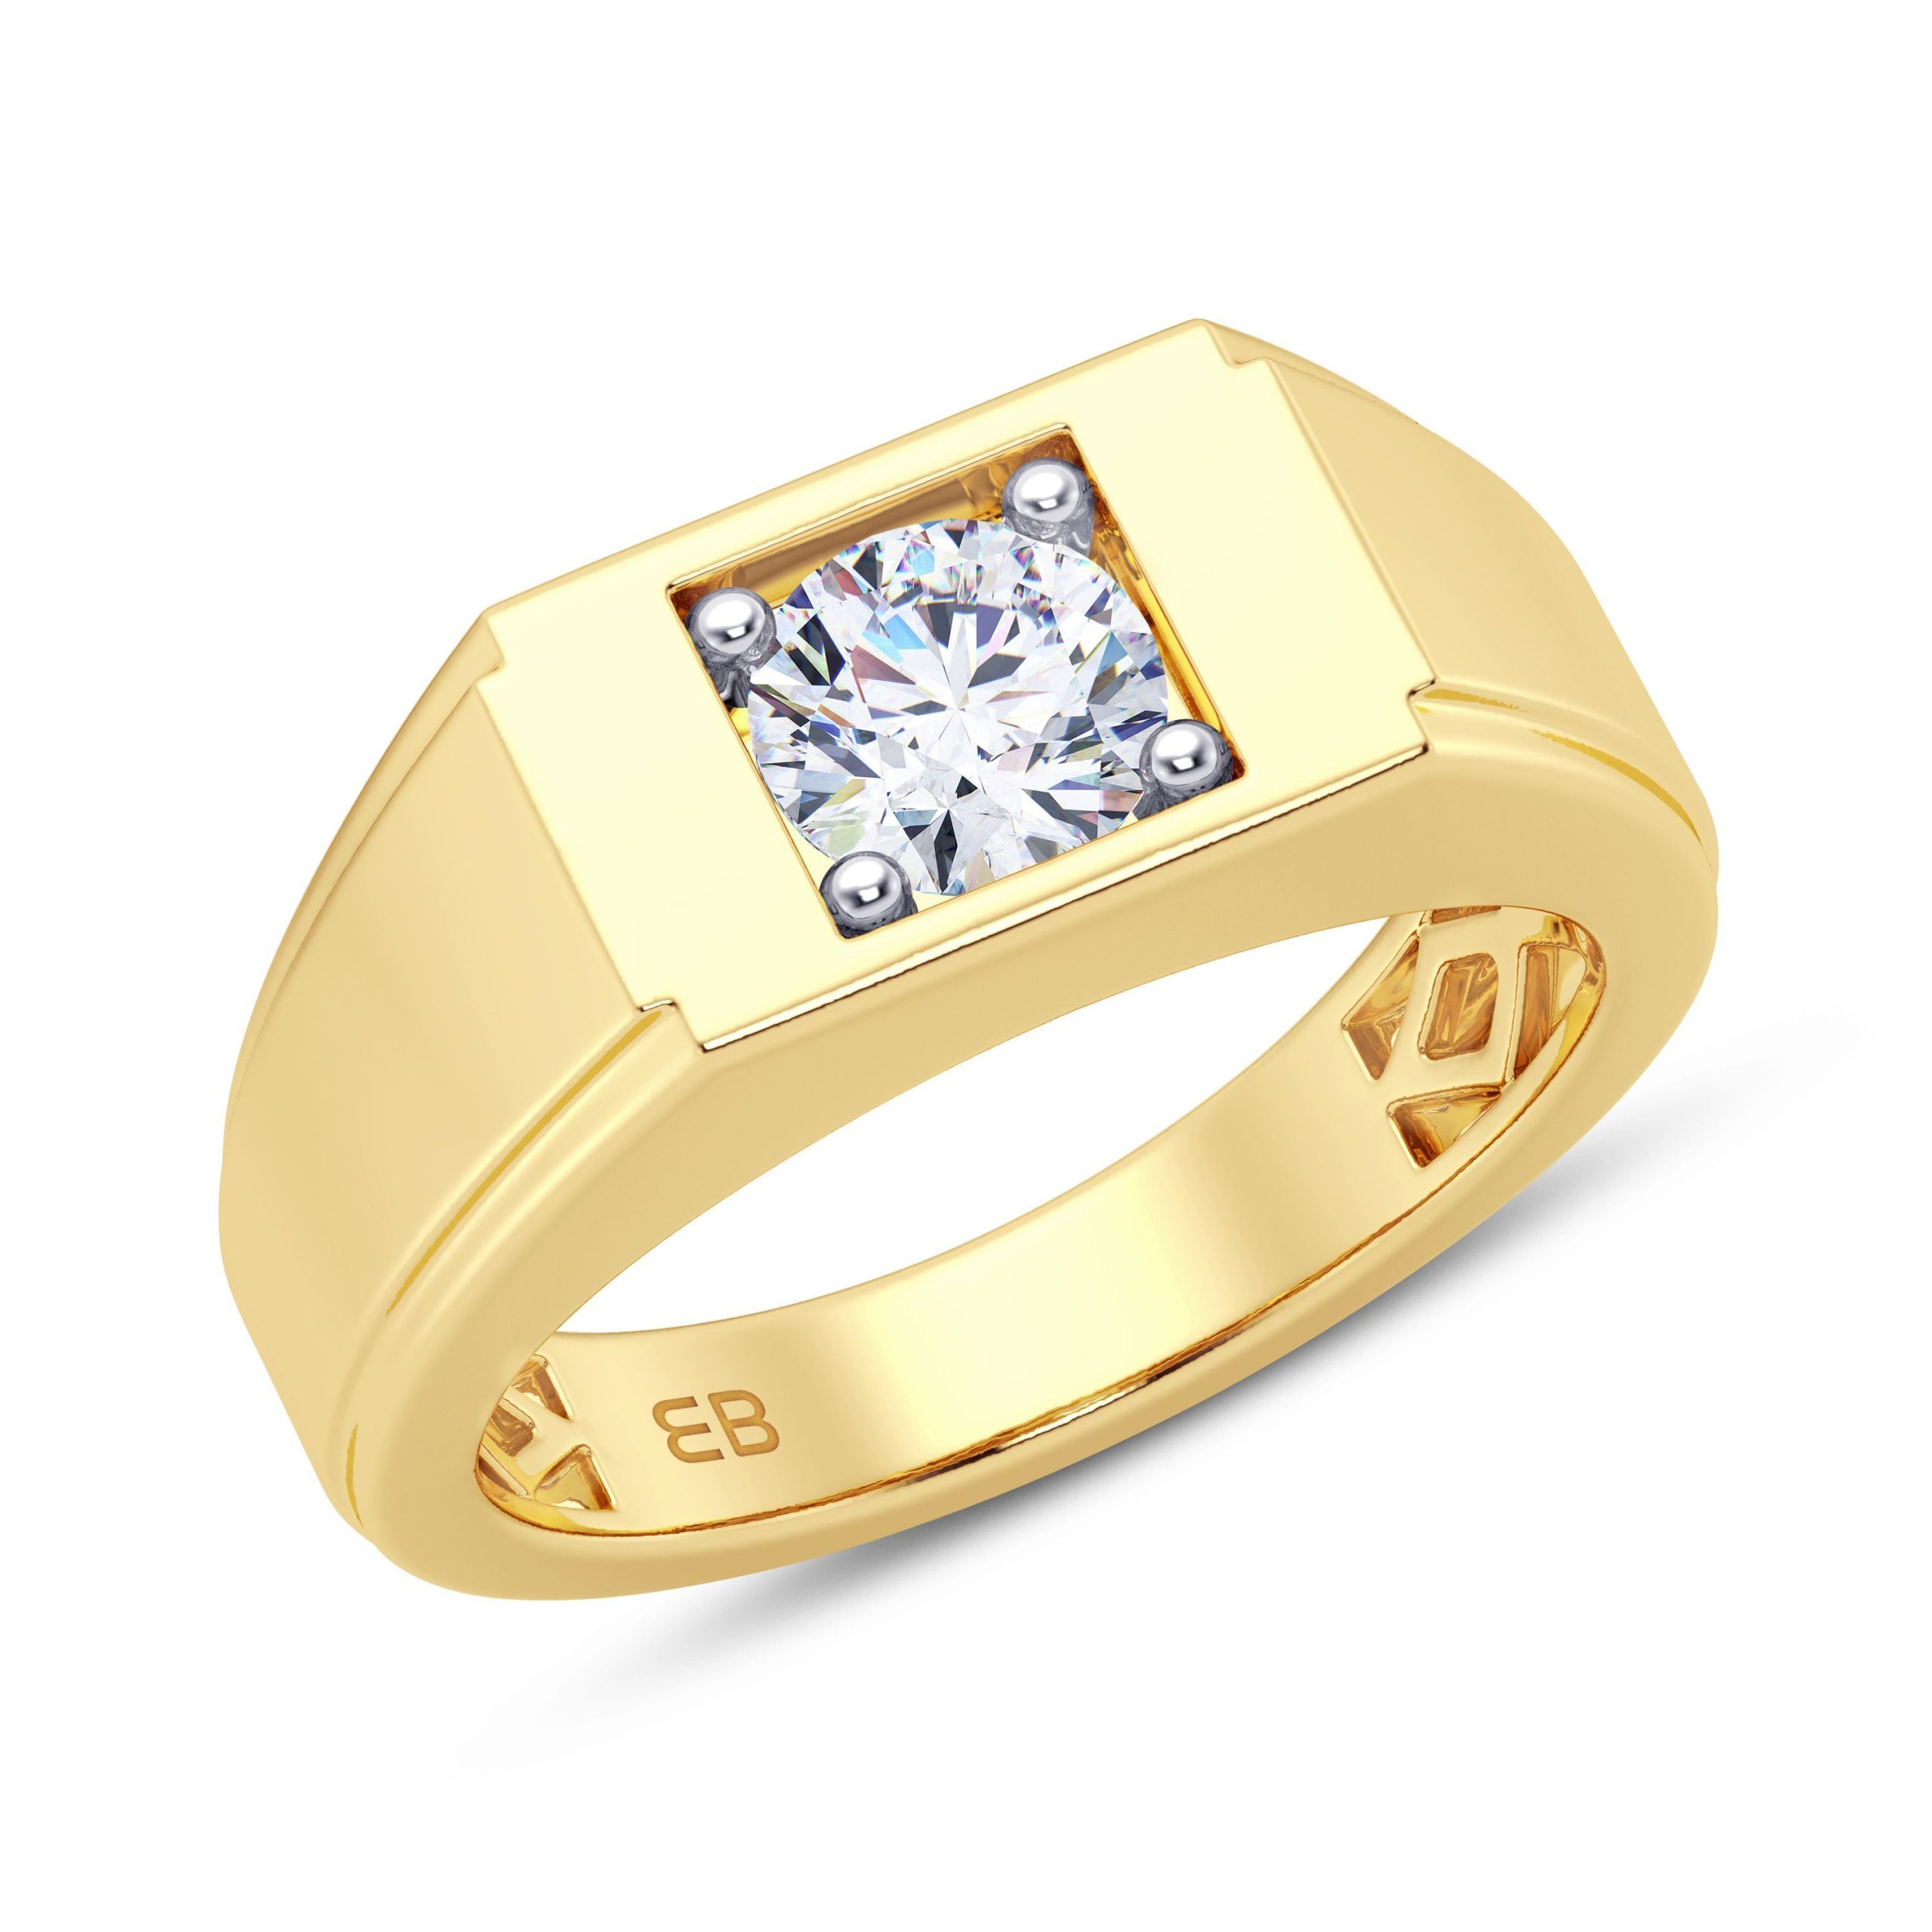 Buy Textured Men's Diamond Ring Online | ORRA